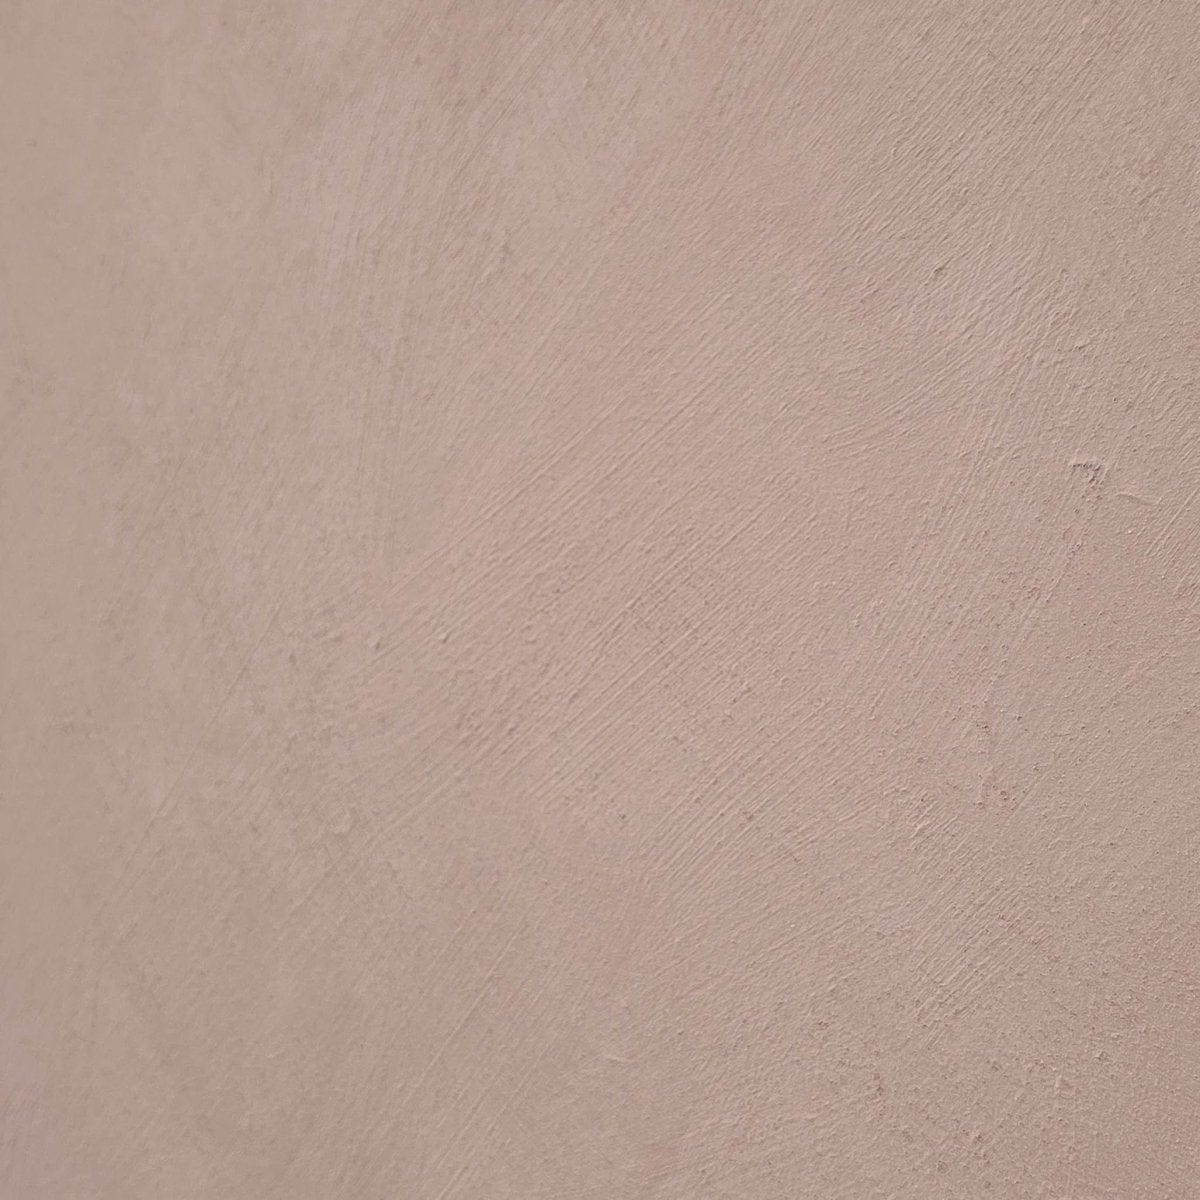 Rosa Polverosa - Pink Limewash Wall Paint